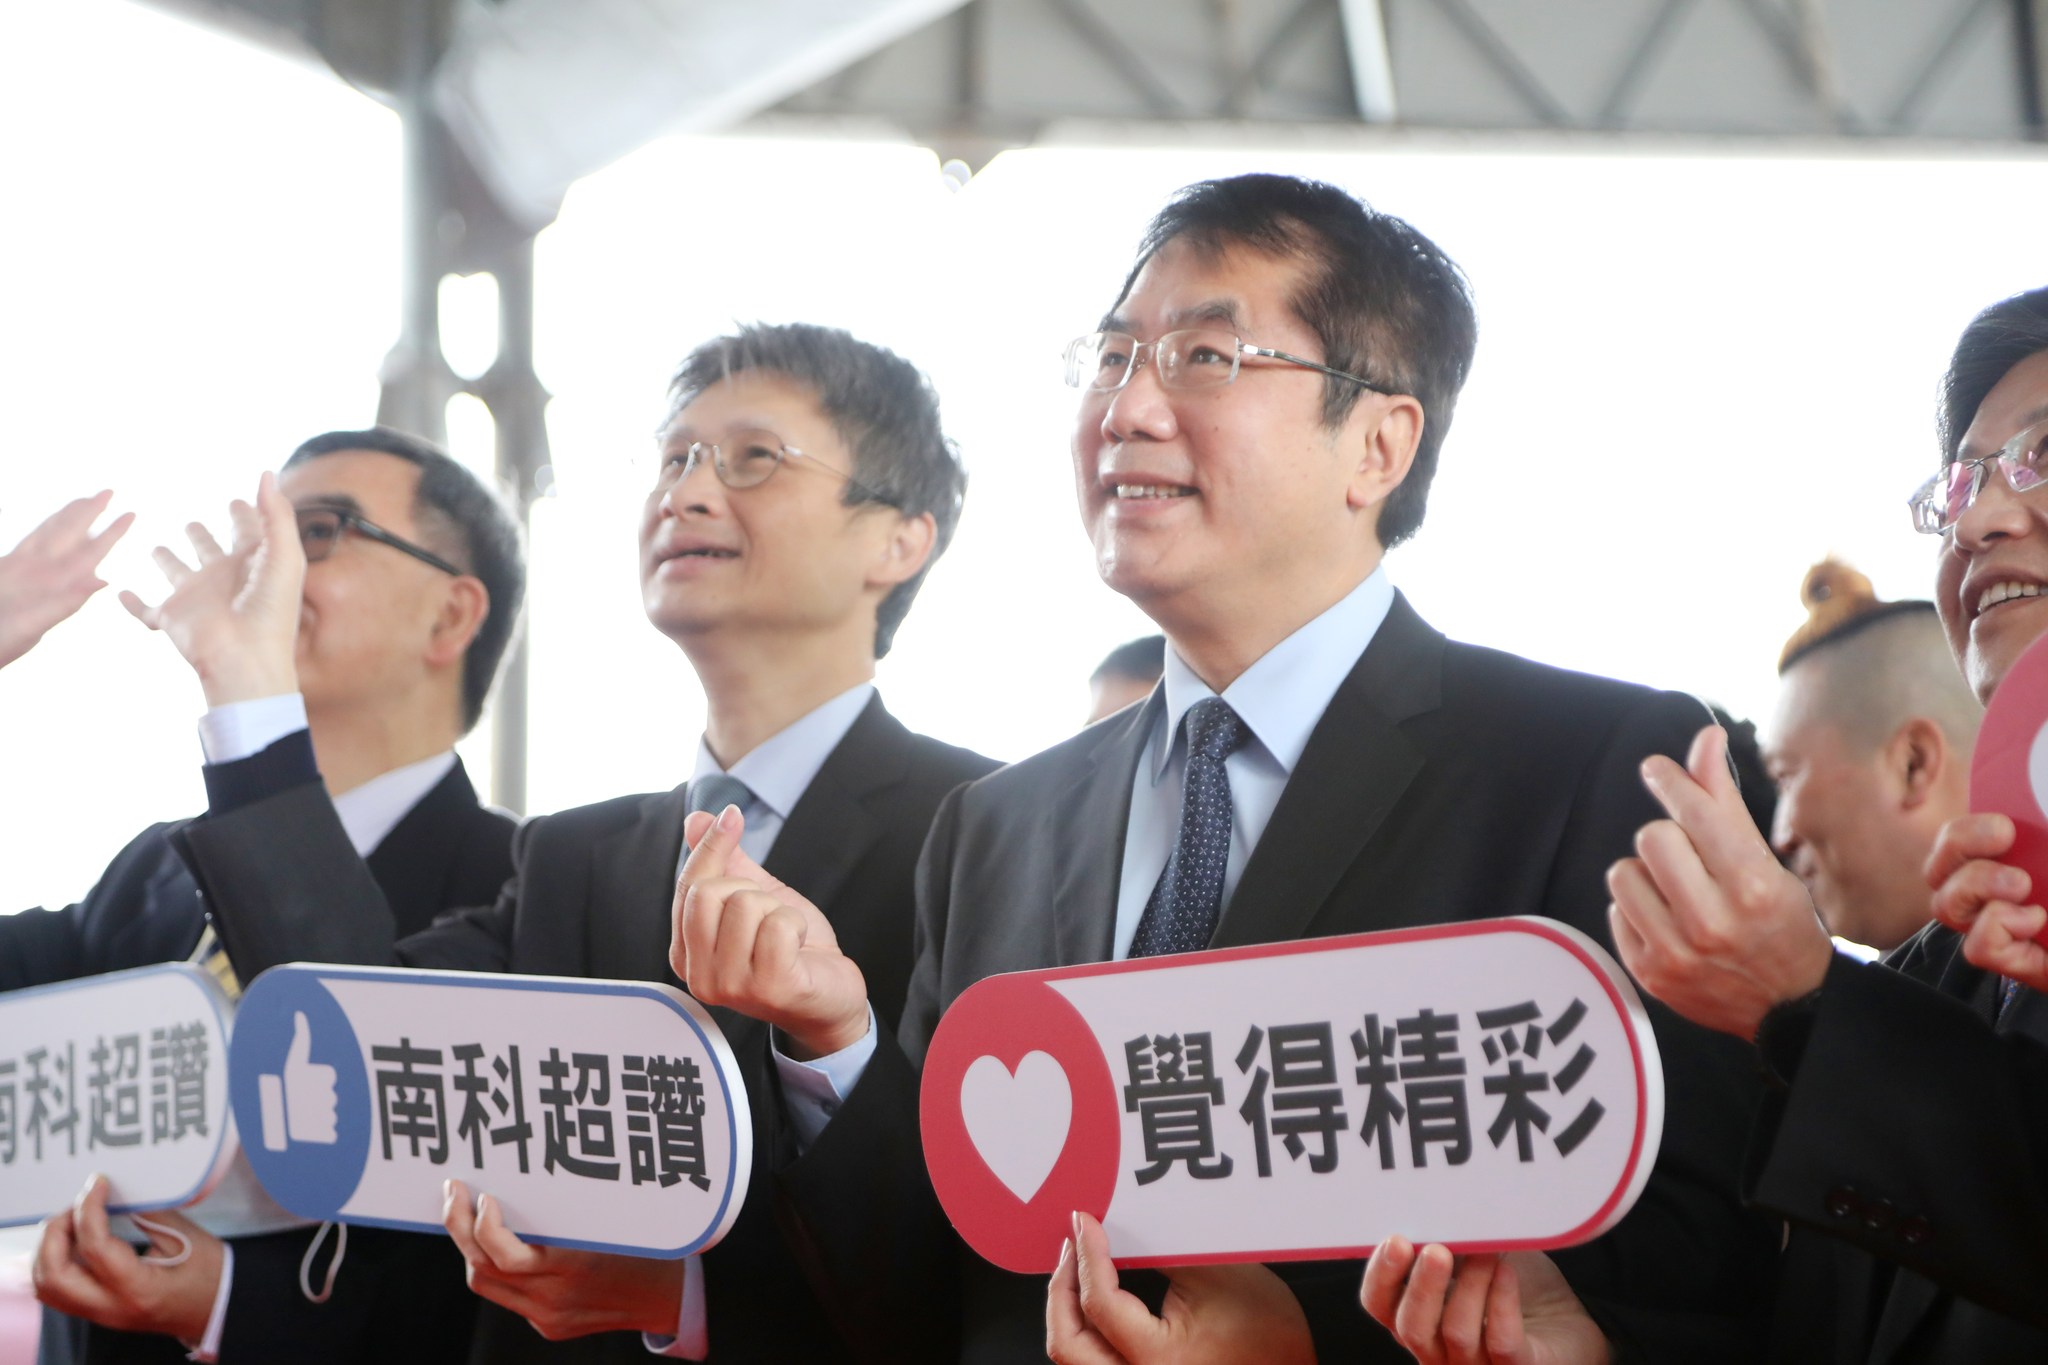 台南市长黄伟哲（右）与南科管理局长苏振纲（右二）出席活动。取自黄伟哲脸书